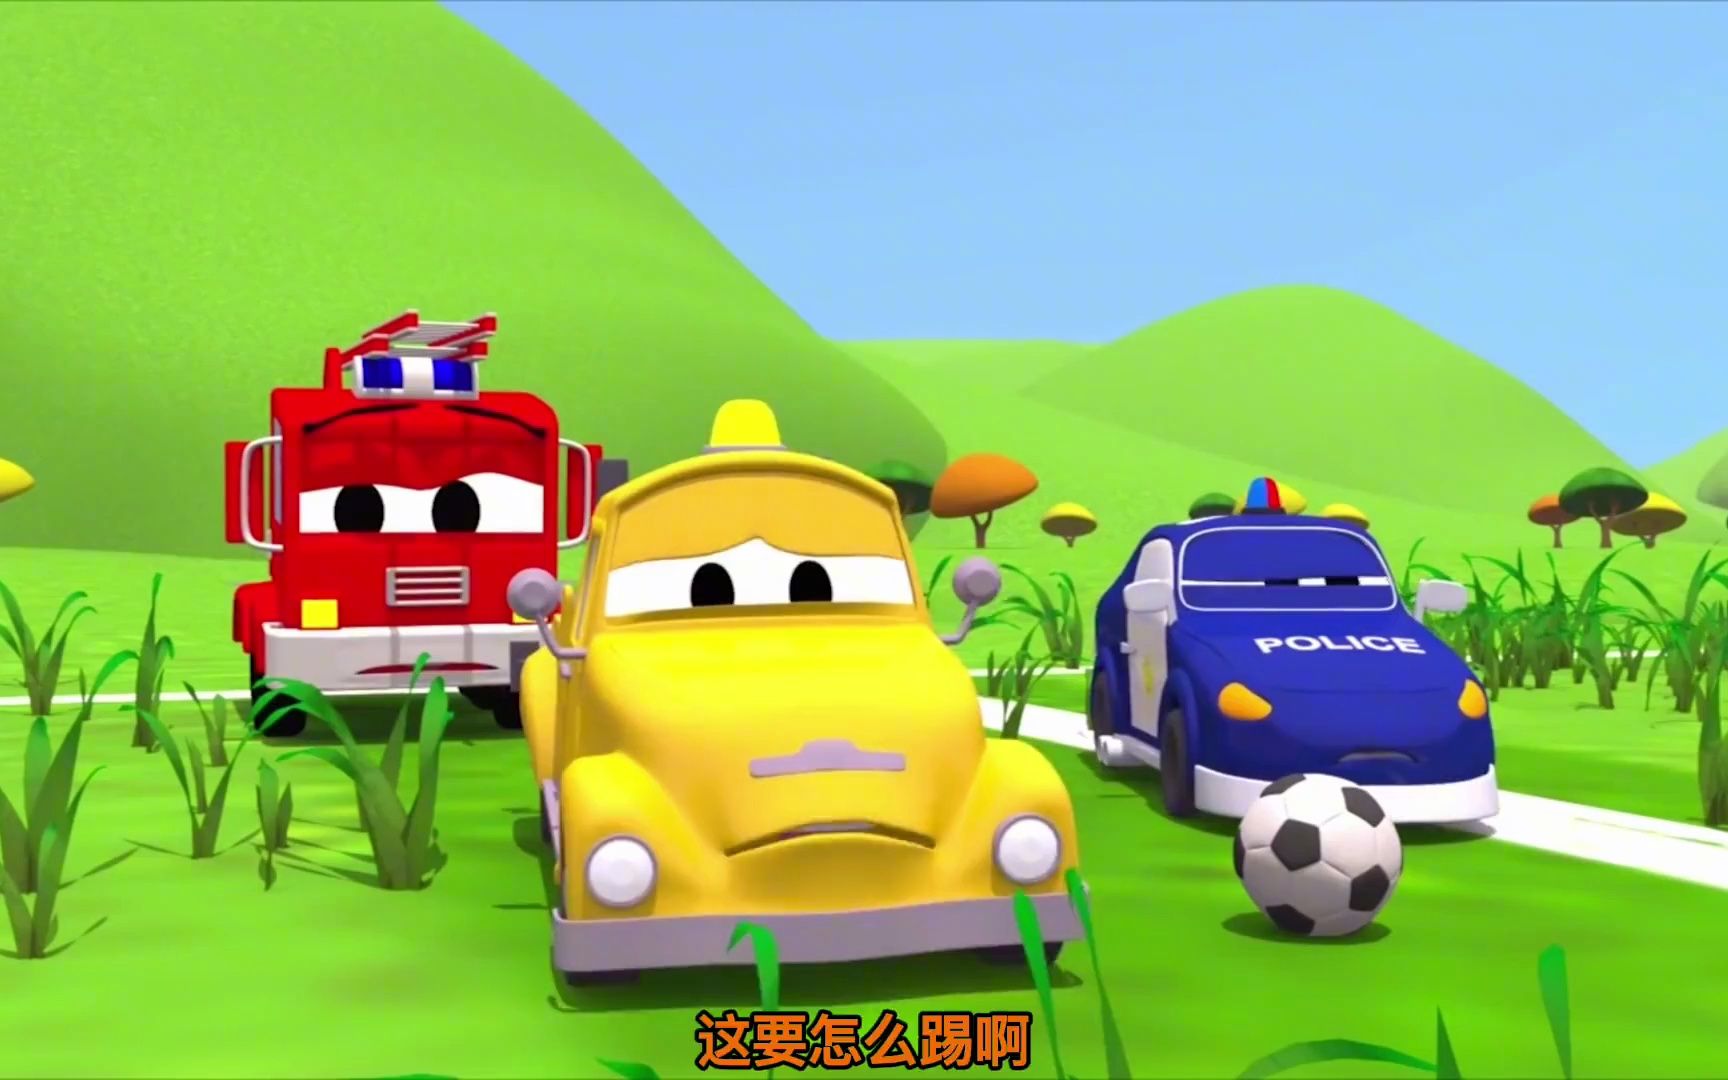 儿童汽车动画:球场长满杂草不能踢球,卡车帮忙恢复球场原貌